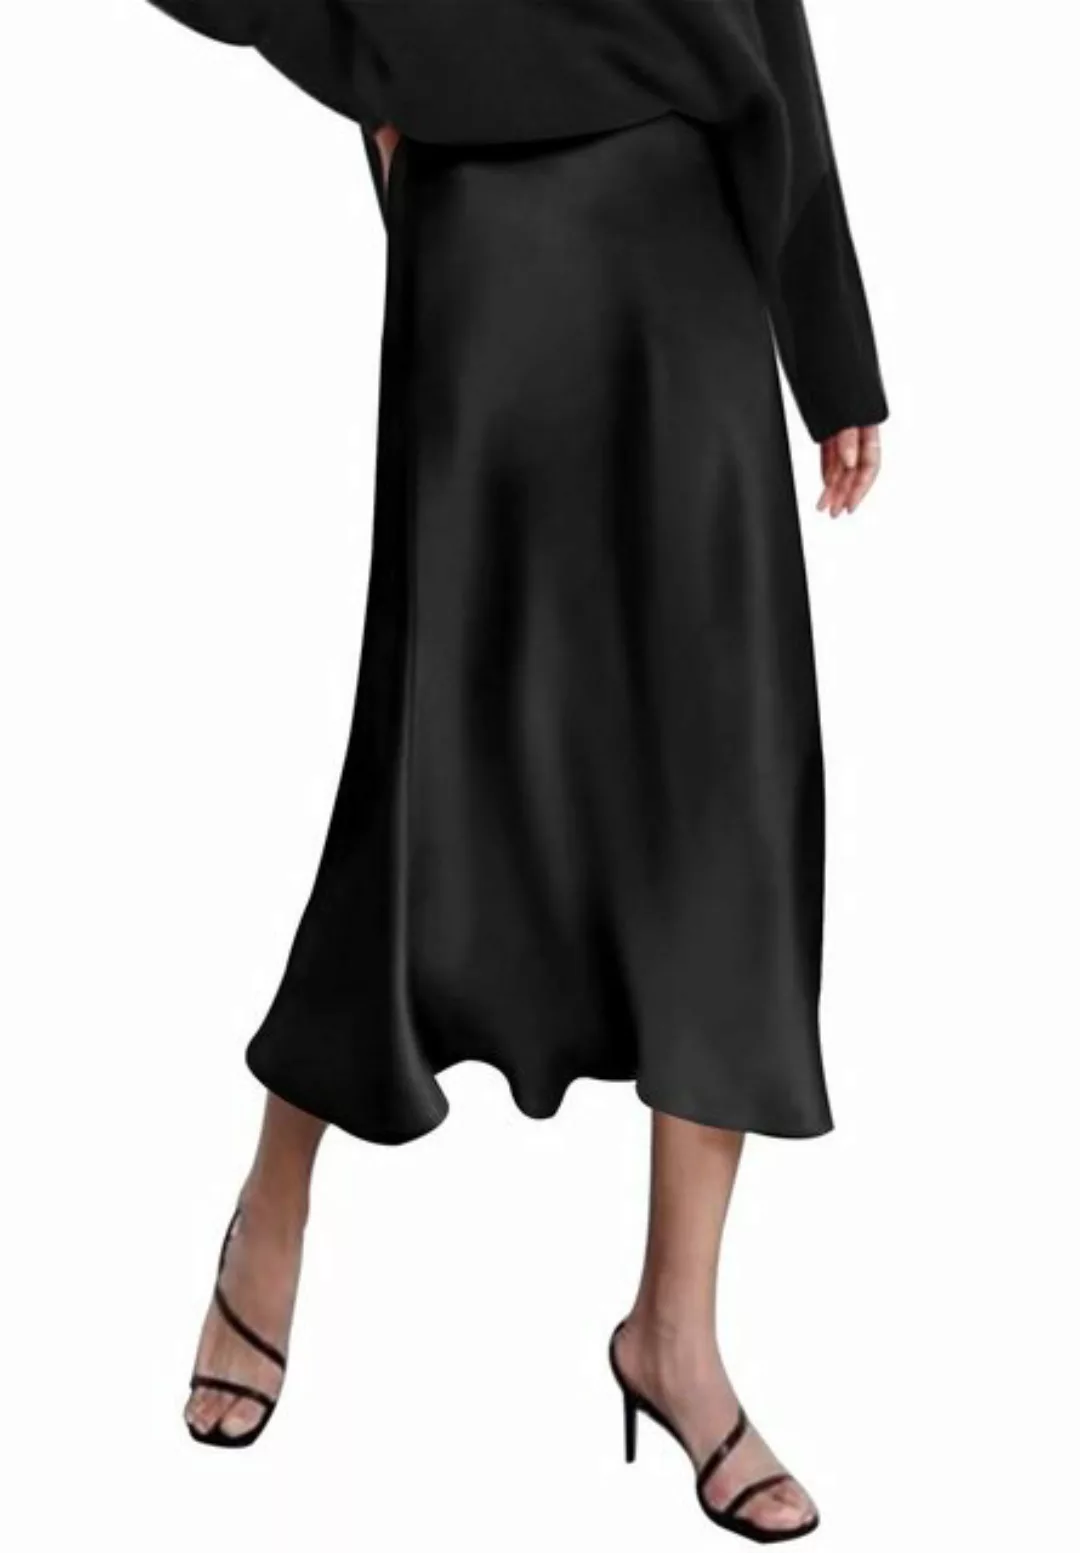 Opspring A-Linien-Rock Damen Satinrock Hohe Taille Skirt Elegant Seide Midi günstig online kaufen